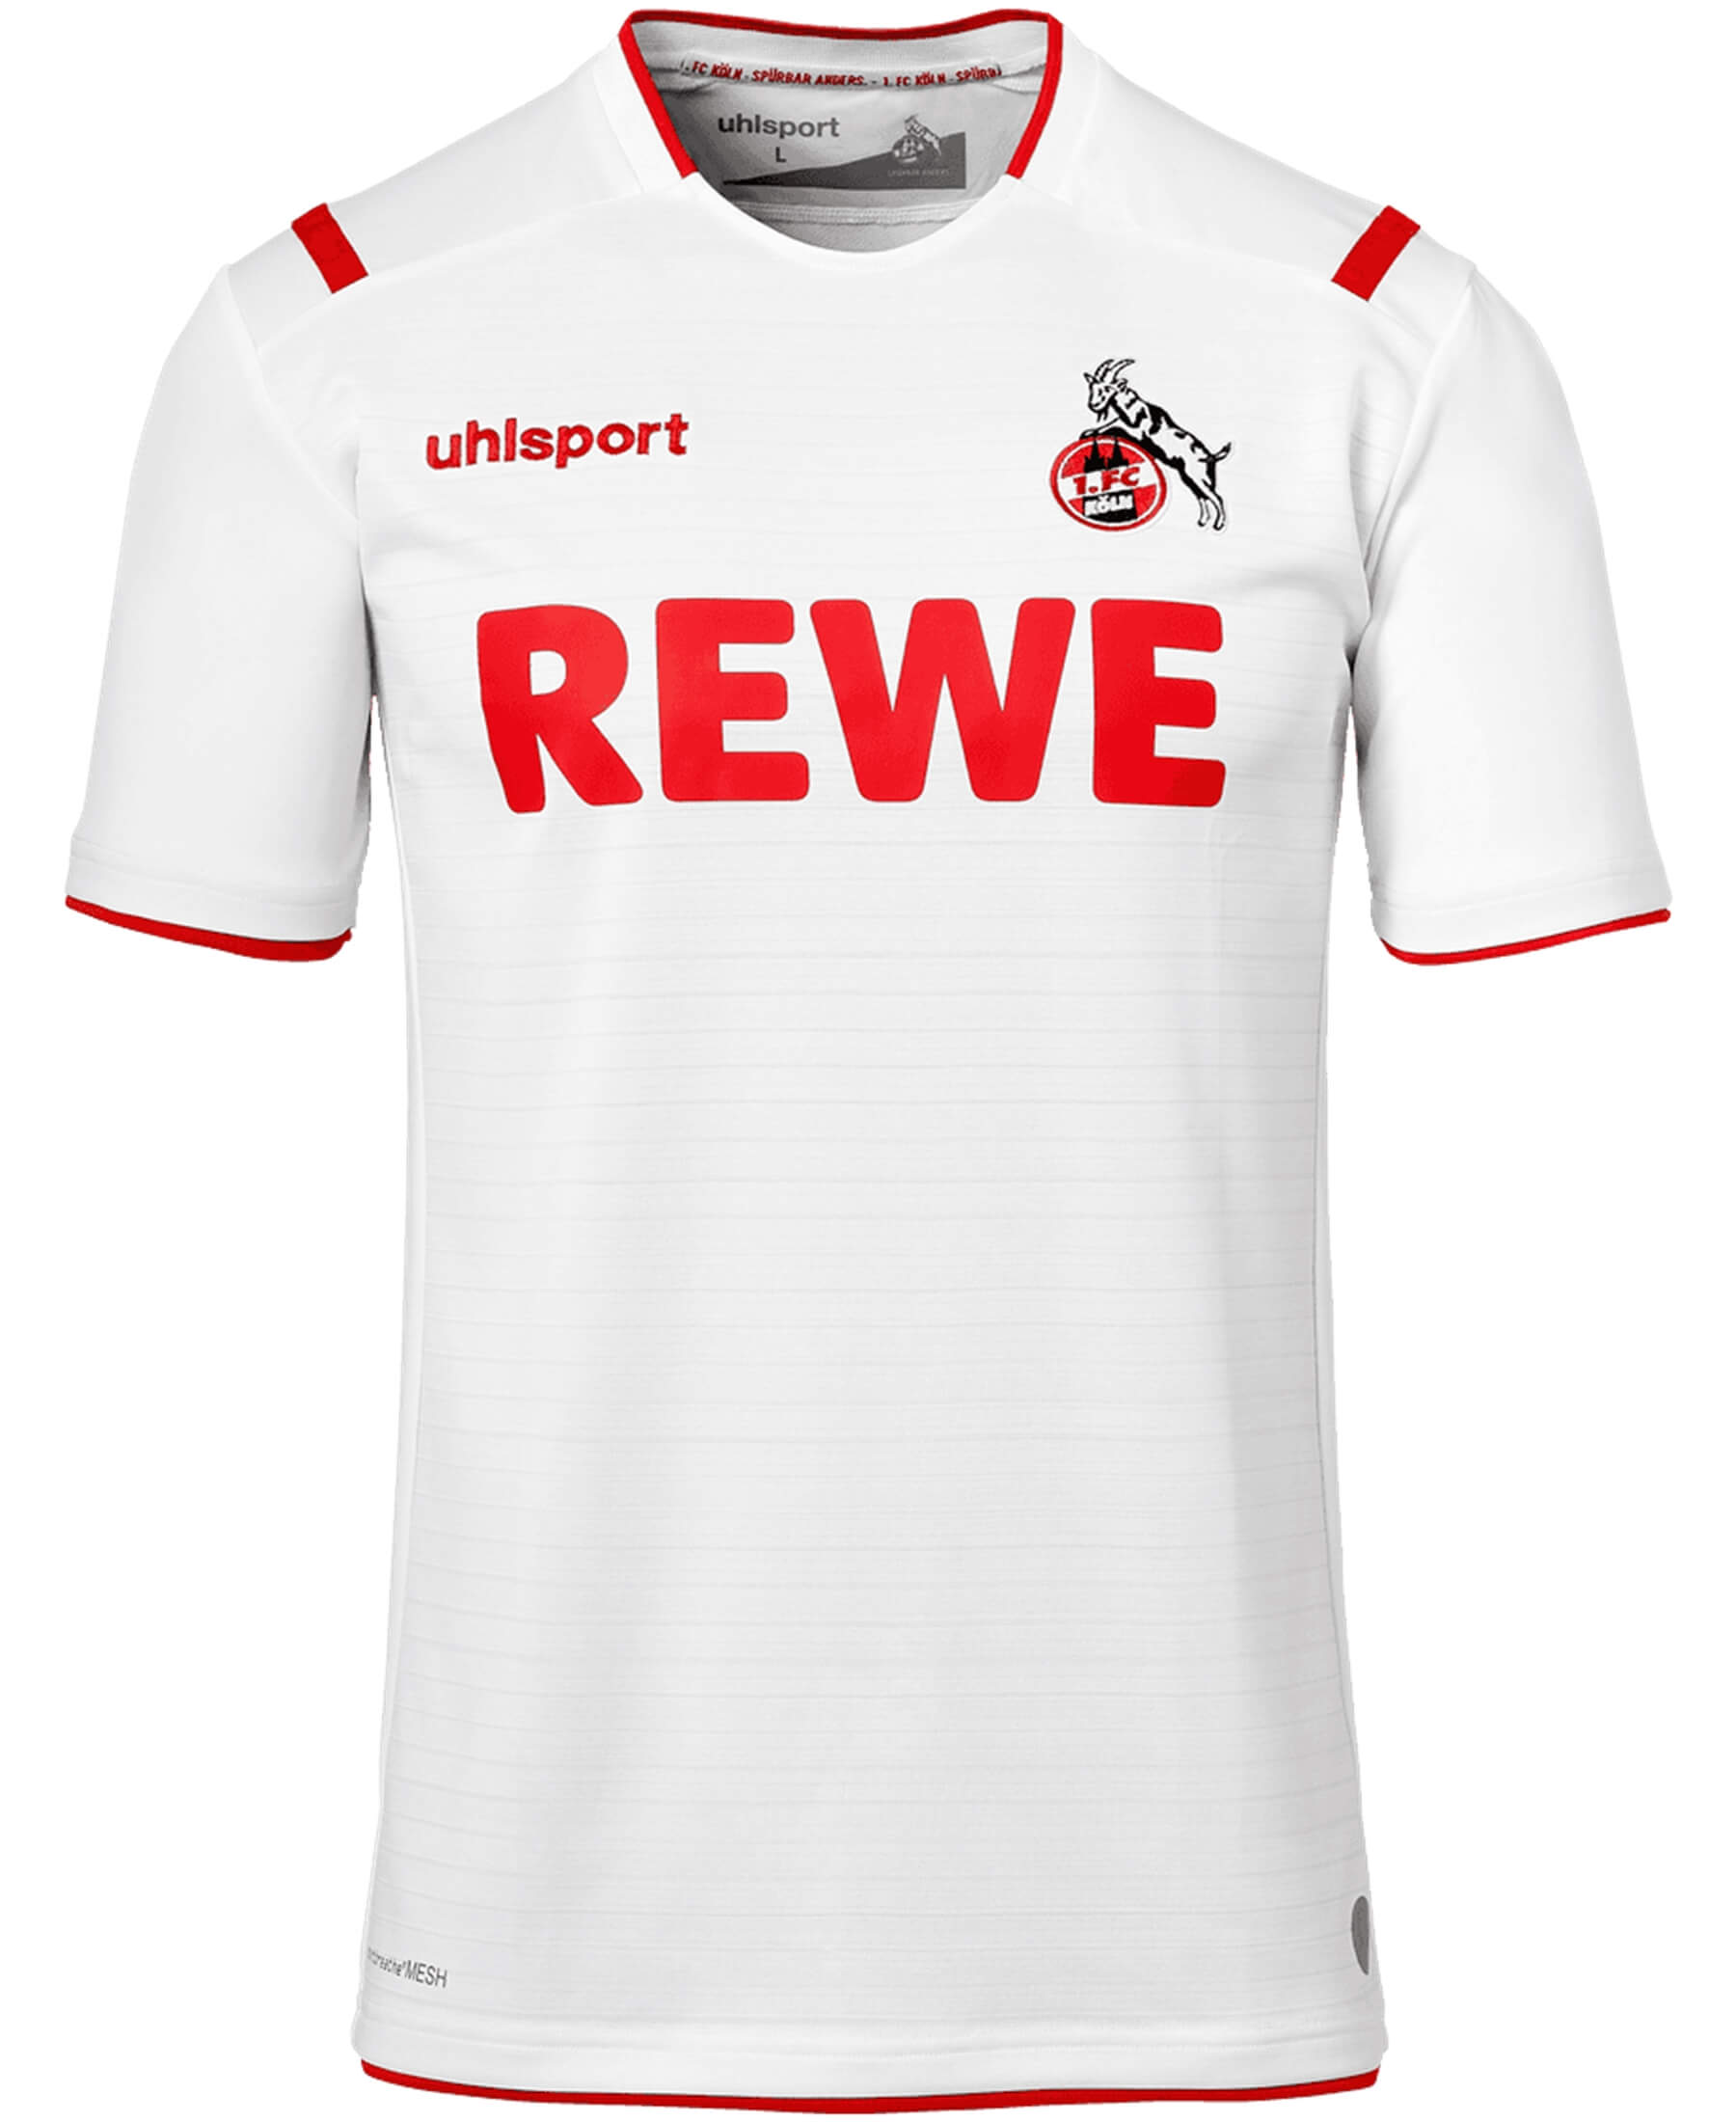 Das offizielle Uhlsport 1. FC Köln Heimtrikot für die Saison 2019/2020 (Artikel-Nr. 1003512011948) - ein Muss für echte FC-Fans. In den Vereinsfarben gestaltet, trägt es stolz das FC-Logo. Hergestellt aus hochwertigen Materialien, bietet es Tragekomfort und Langlebigkeit. Zeigen Sie Ihre Verbundenheit im Stadion und im Alltag mit diesem authentischen Trikot. Holen Sie sich jetzt bei SHOP4TEAMSPORT Ihren Fanartikel und unterstützen Sie den 1. FC Köln auf stilvolle Weise.